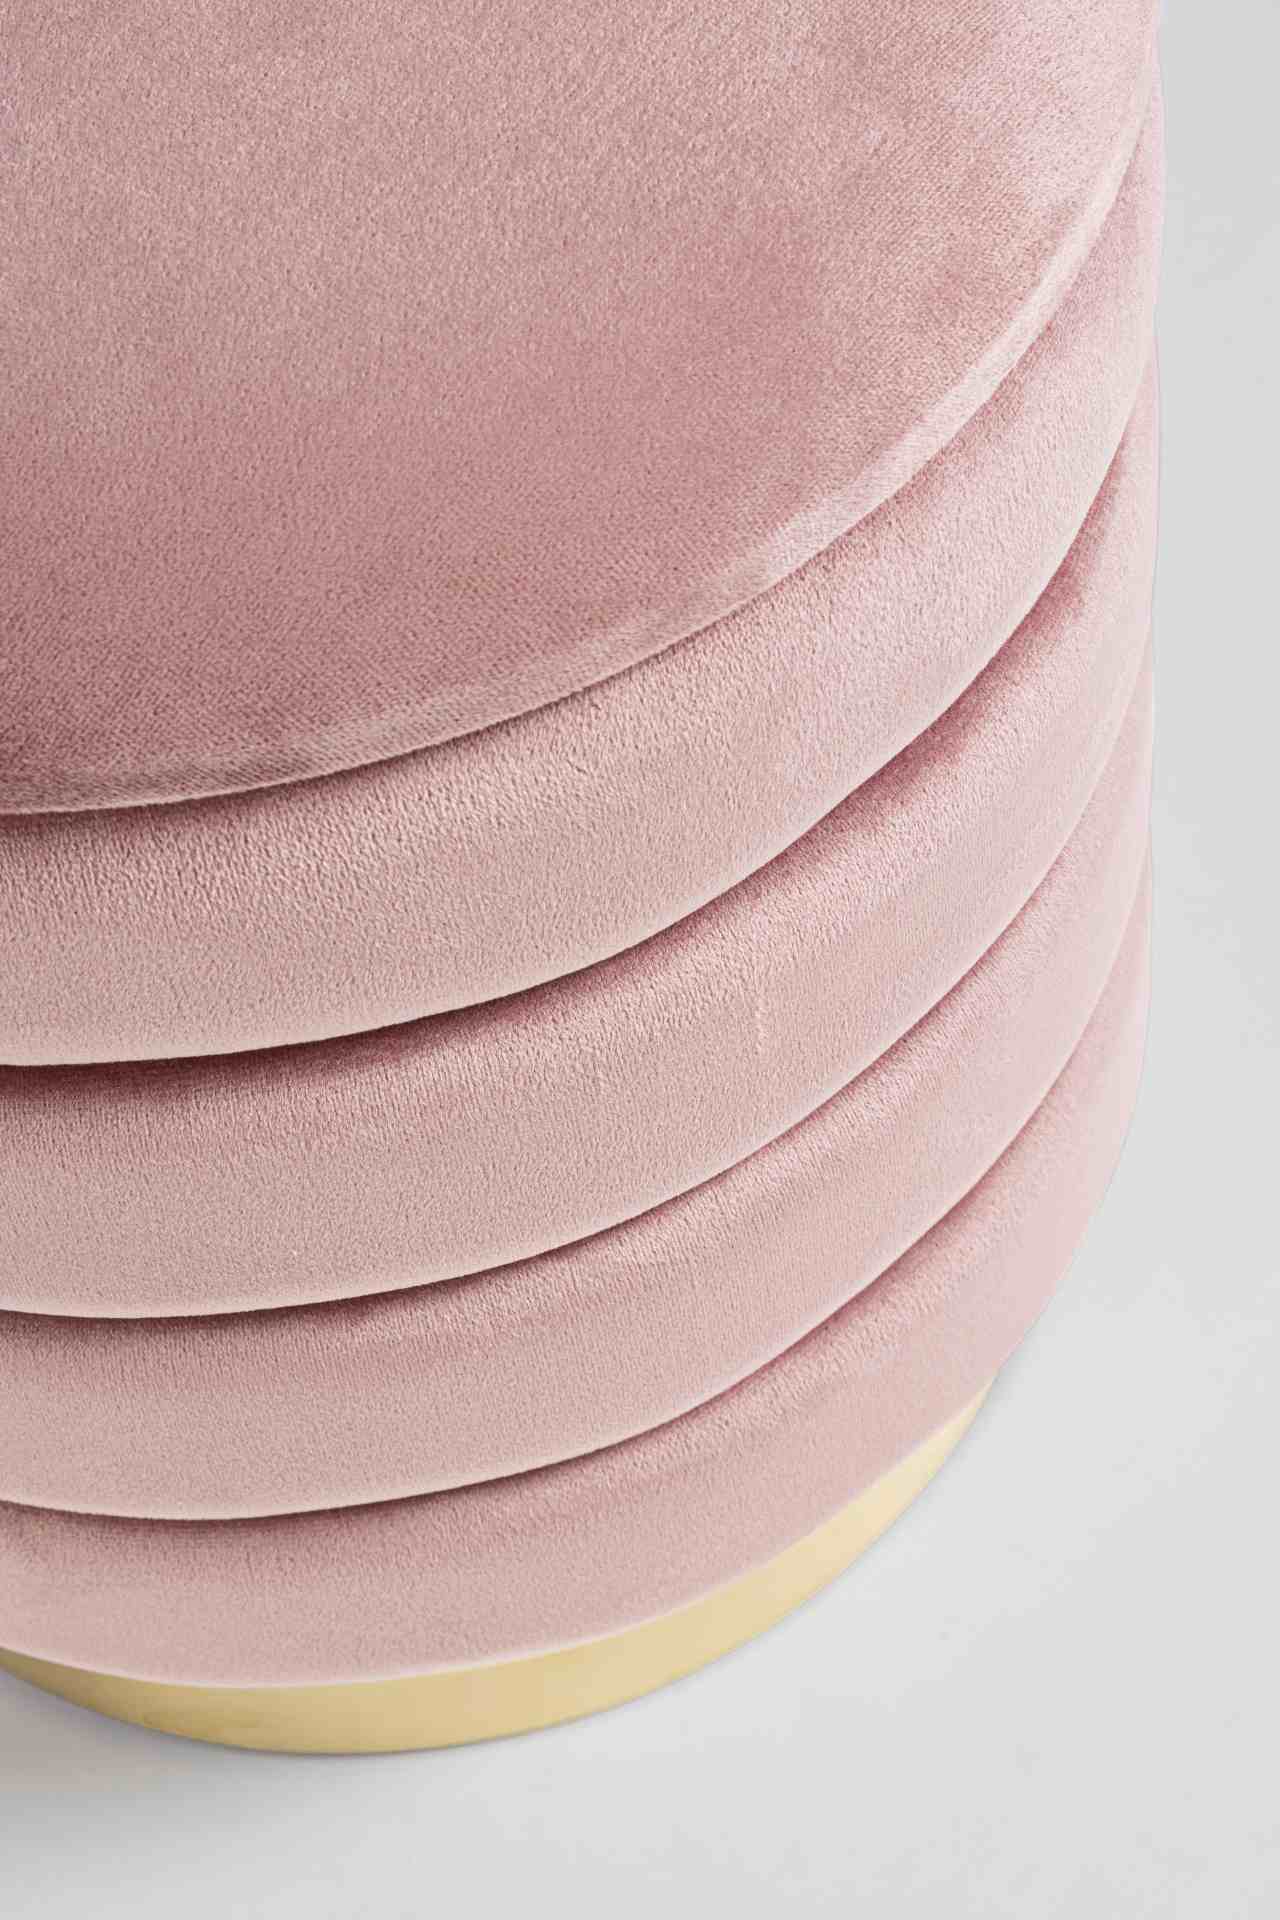 Der Pouf Darina überzeugt mit seinem modernen Design. Erhältlich ist er als 2er-Set. Gefertigt wurde er aus Stoff in Samt-Optik, welcher einen rosa Farbton besitzt. Das Gestell ist aus Metall und hat eine goldene Farbe. Der Durchmesser beträgt 40 cm.